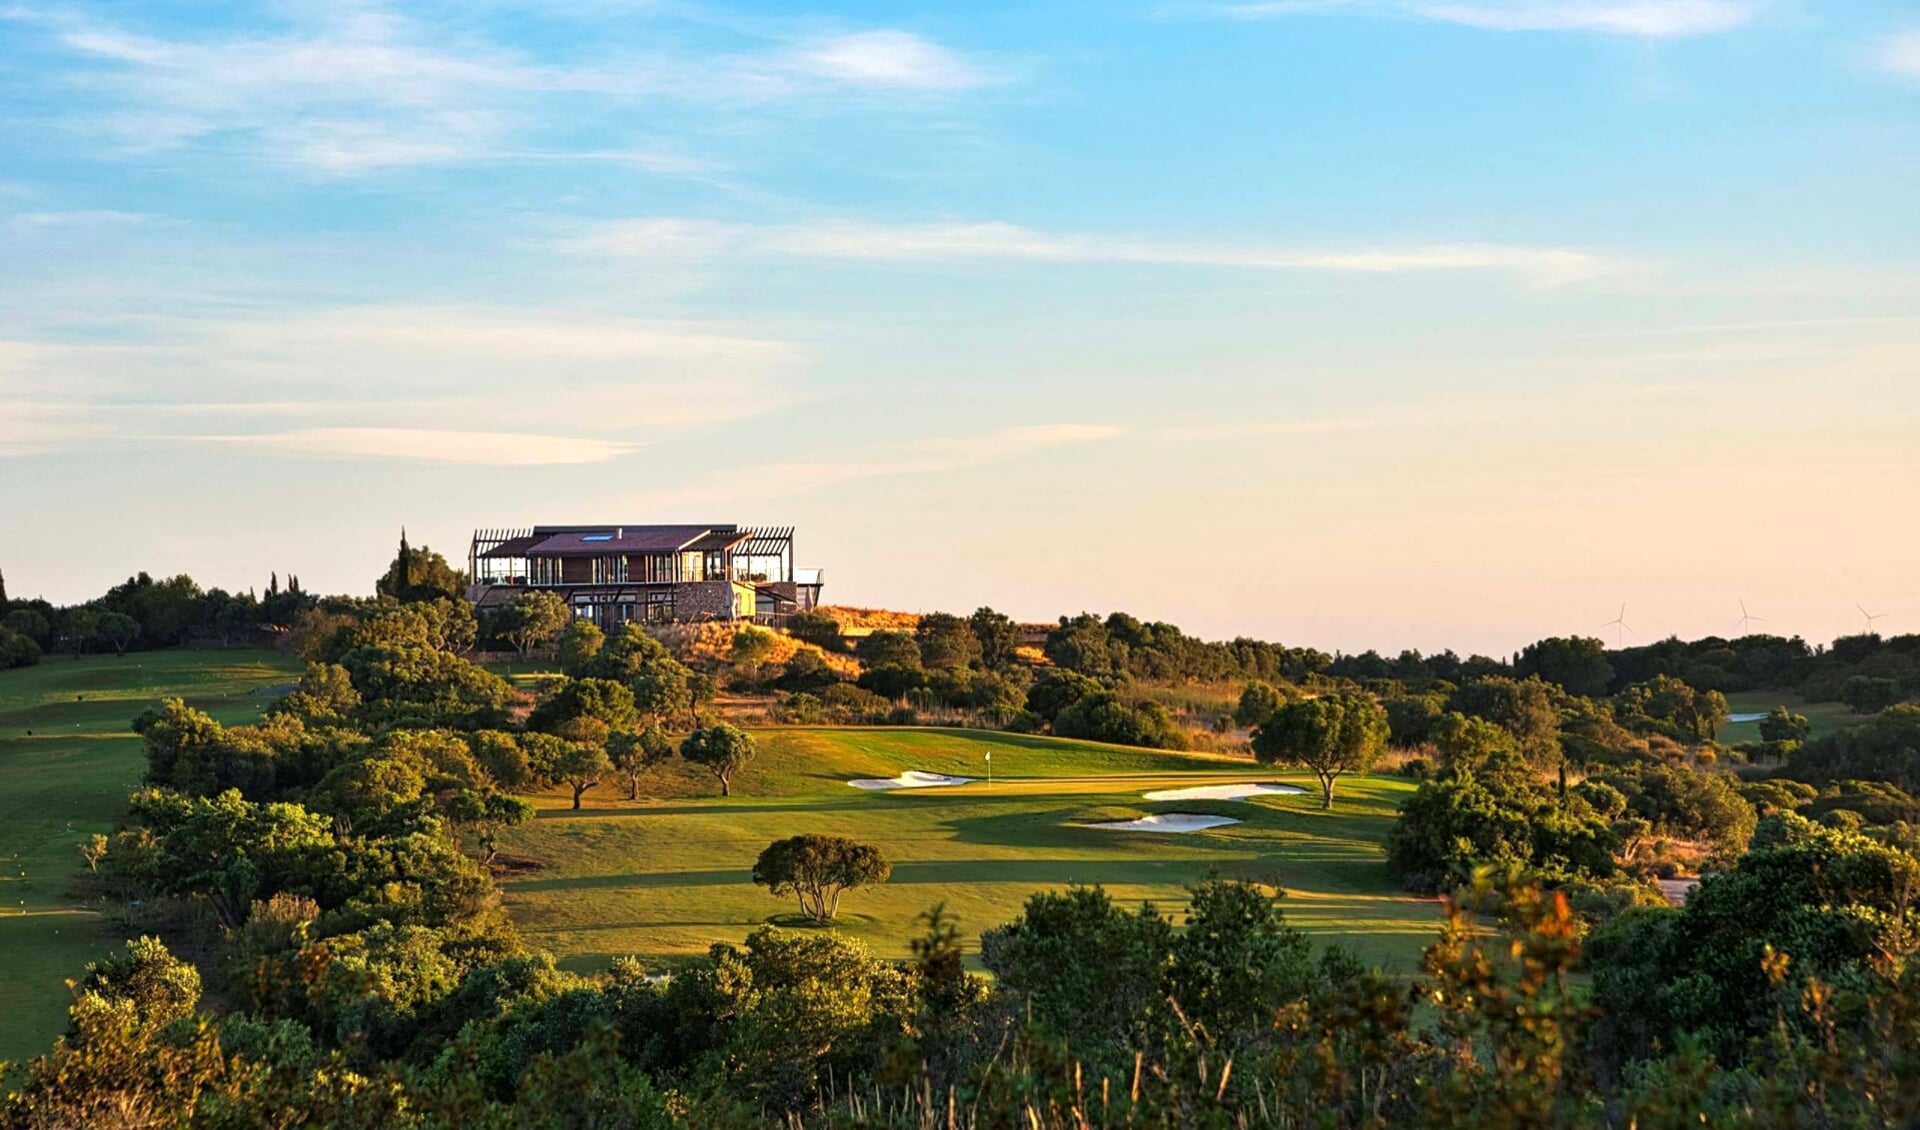 De prachtige golfcourse van Espiche met het clubhuis waarvandaan je een fraai uitzicht hebt over de Algarve.